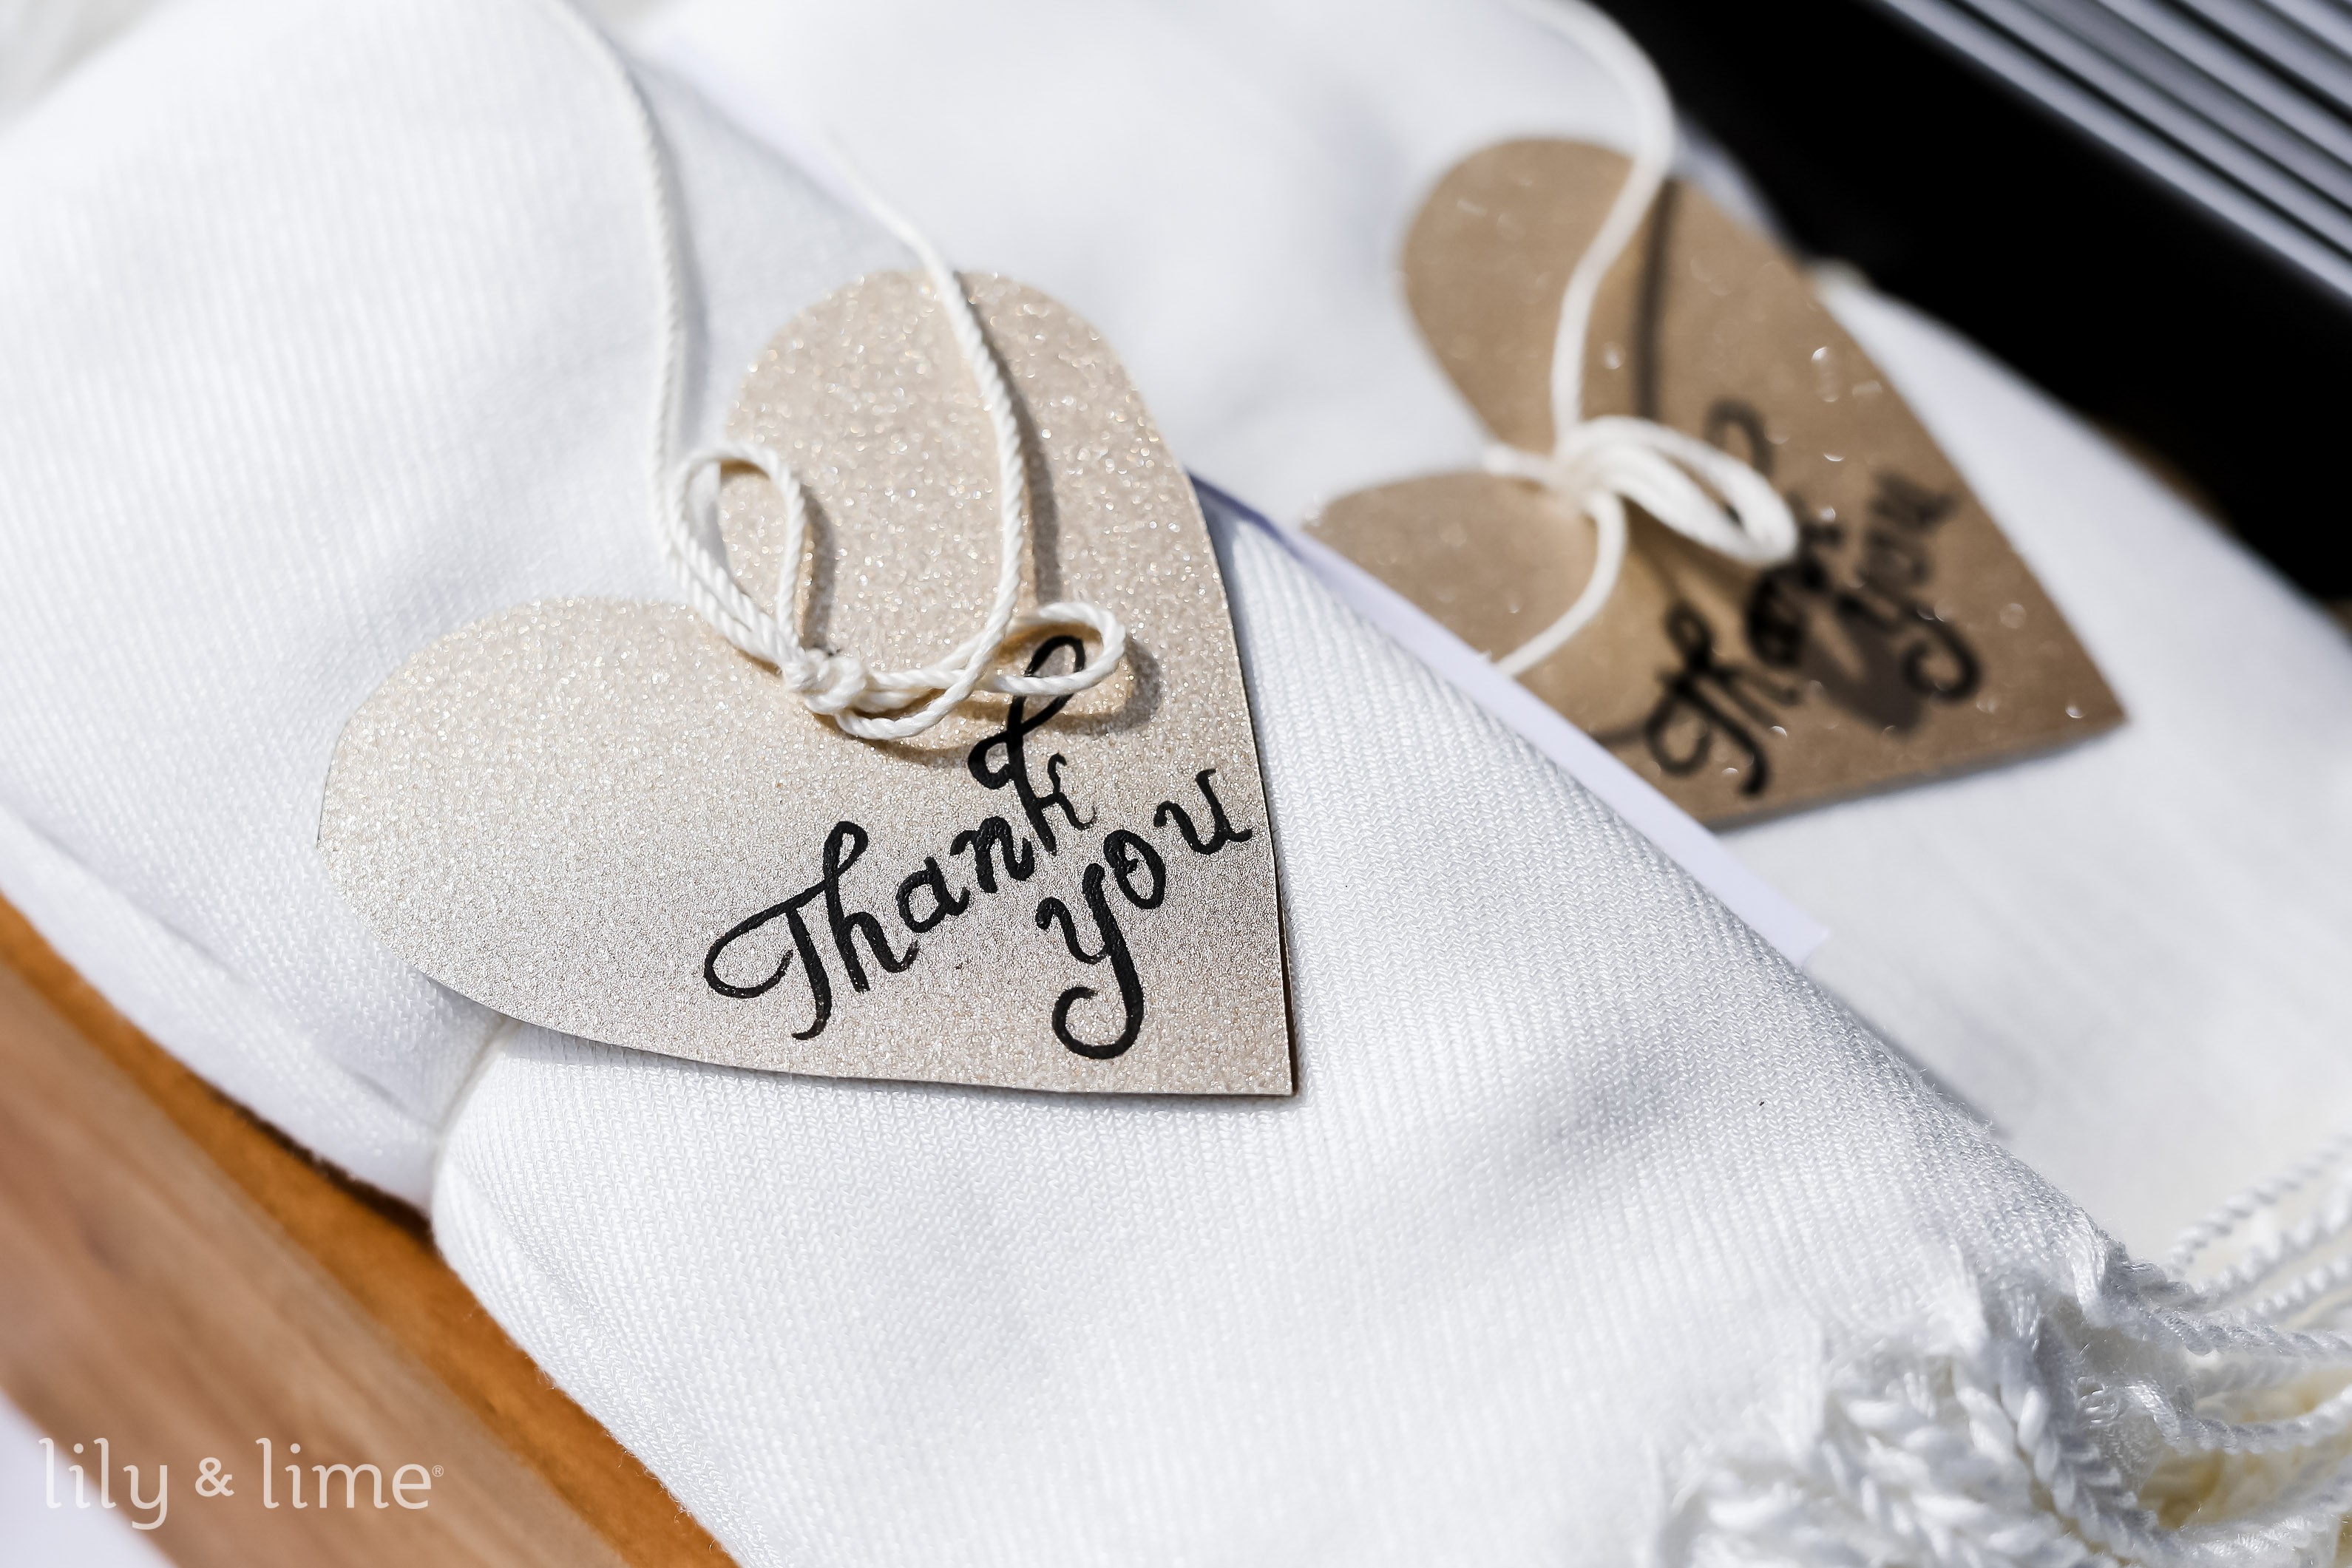 White Glittered Snowflake Ornaments - Winter Weddings Theme - Weddings with  a Theme - Wedding Supplies